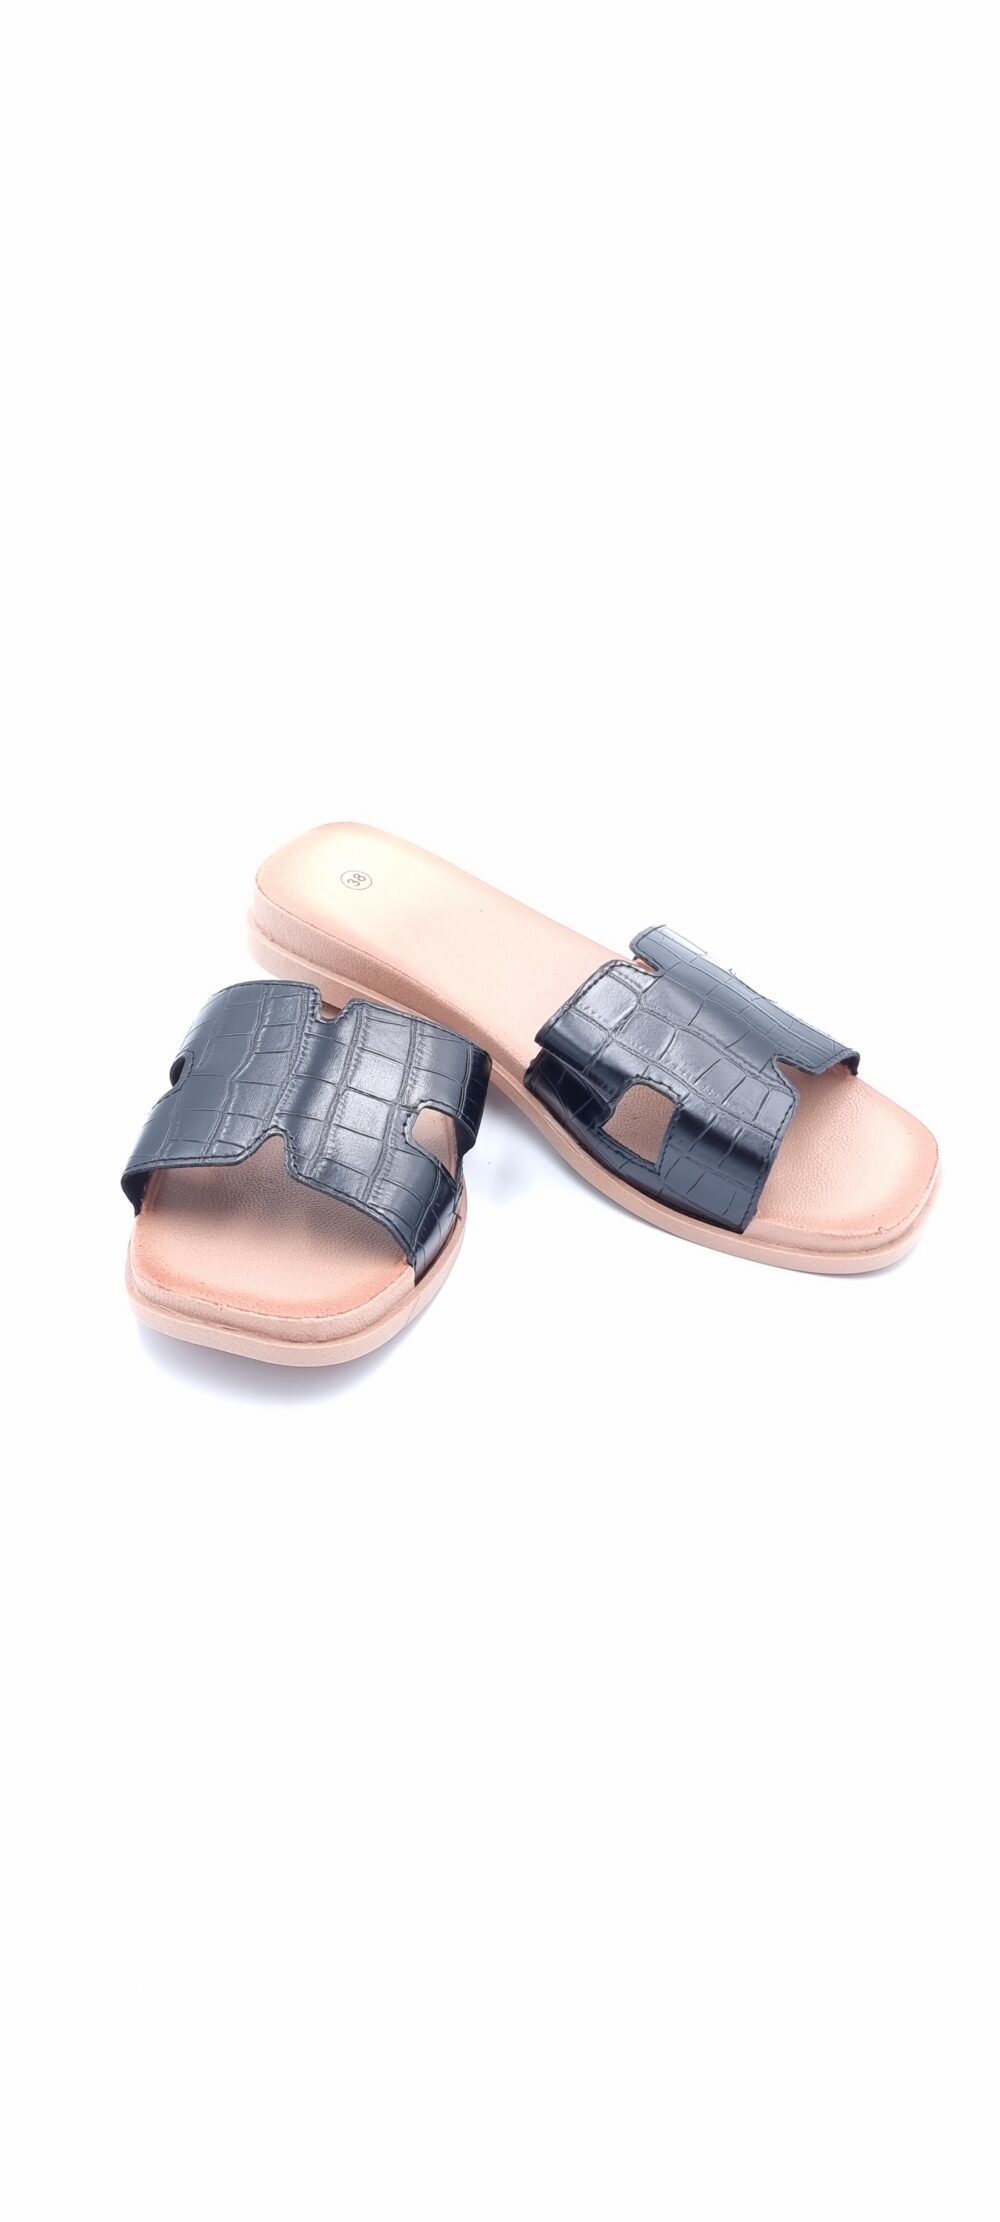 Crocus black slipper sandal